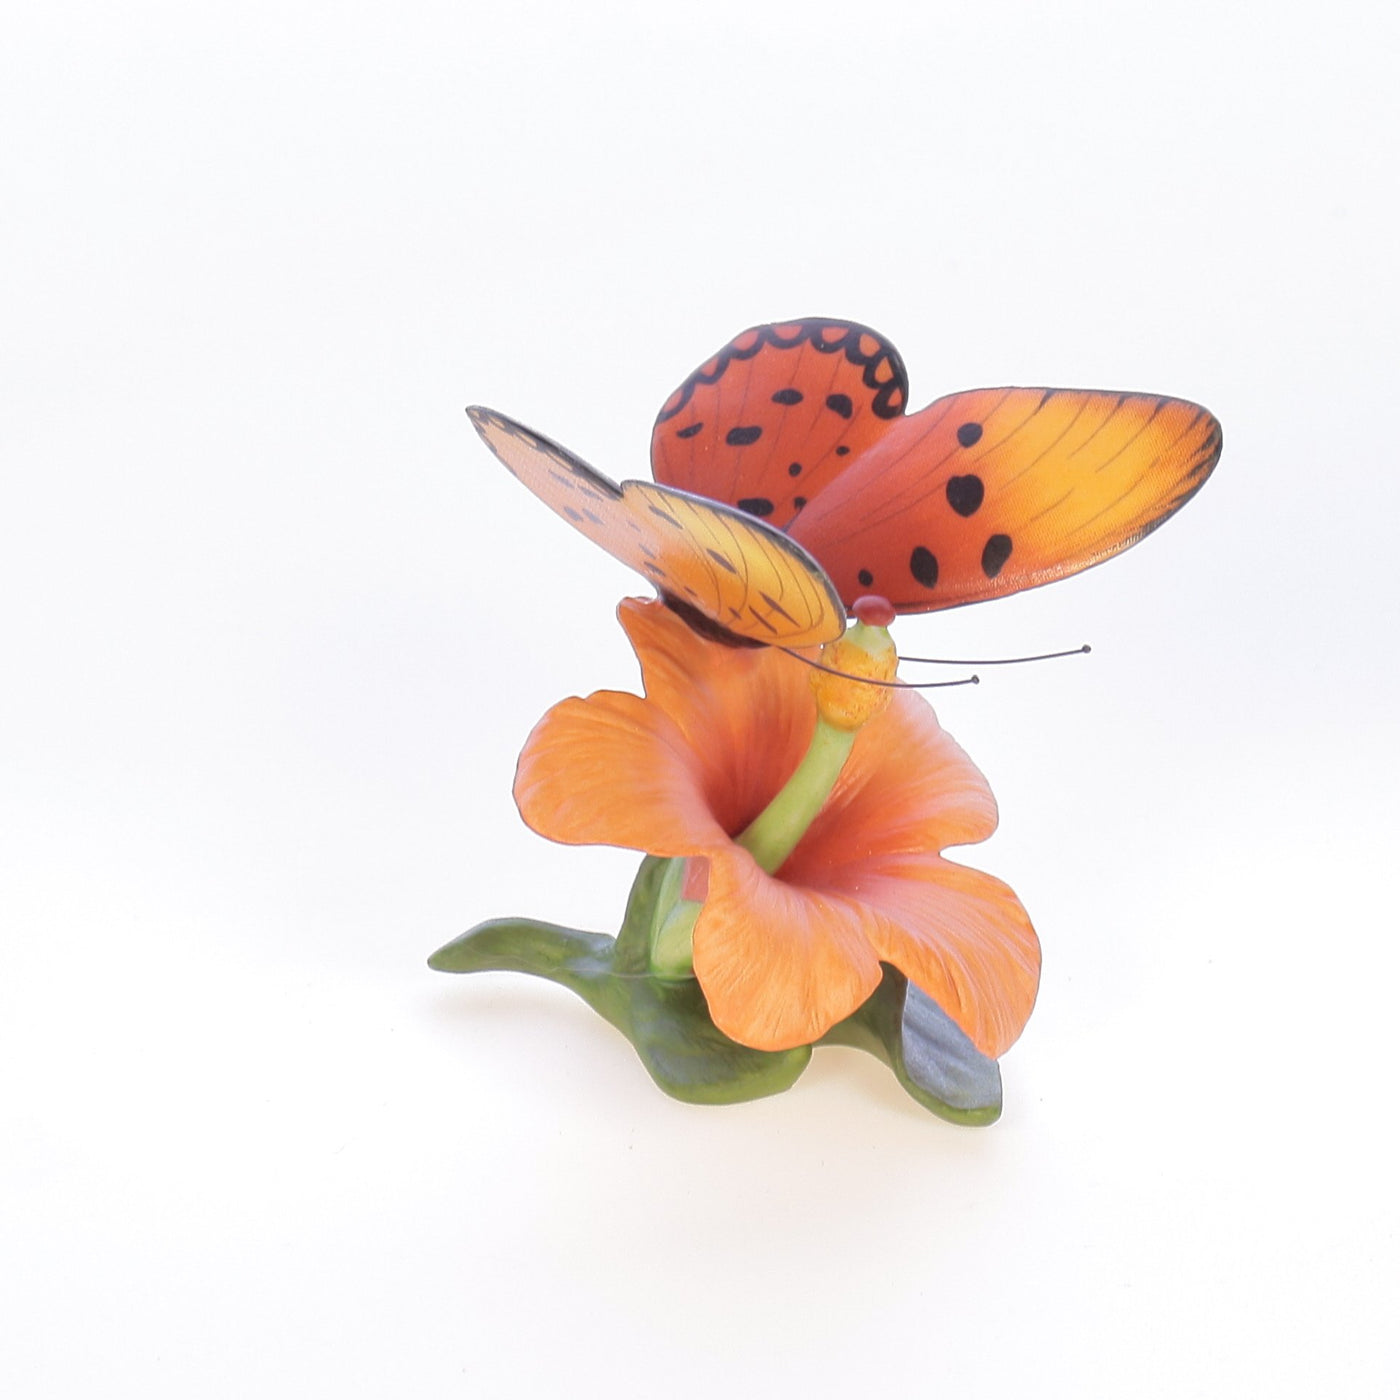 Butterflies_of_the_World_Fiery_Acraea_on_Hibiscus_Butterflies_of_the_World_Figurine_1985